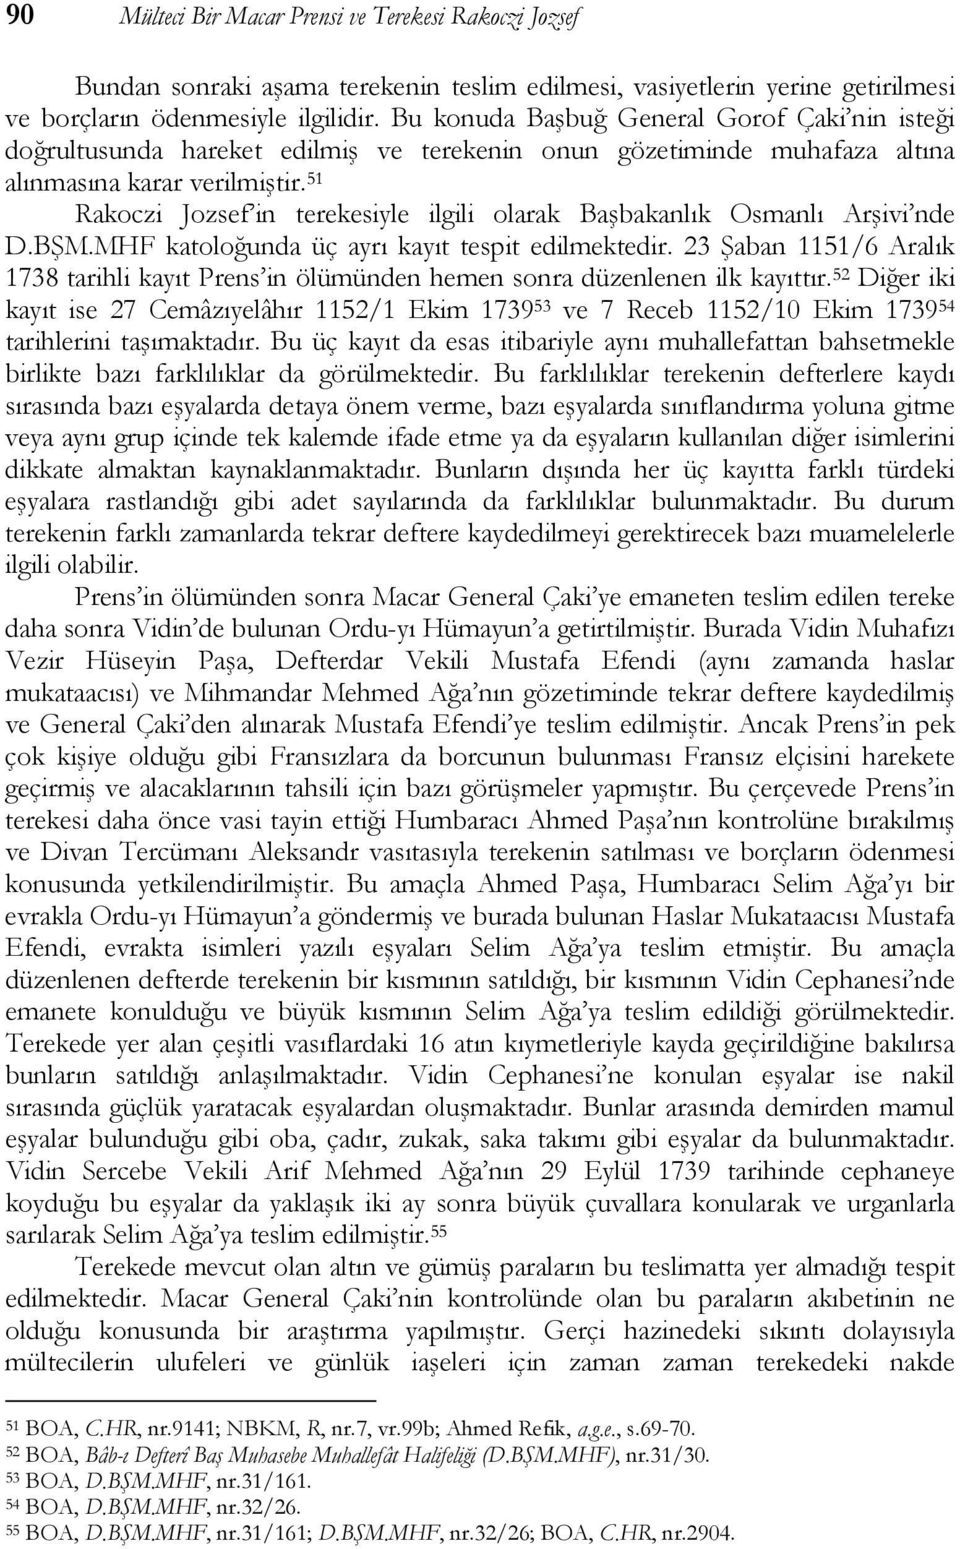 51 Rakoczi Jozsef in terekesiyle ilgili olarak Başbakanlık Osmanlı Arşivi nde D.BŞM.MHF katoloğunda üç ayrı kayıt tespit edilmektedir.